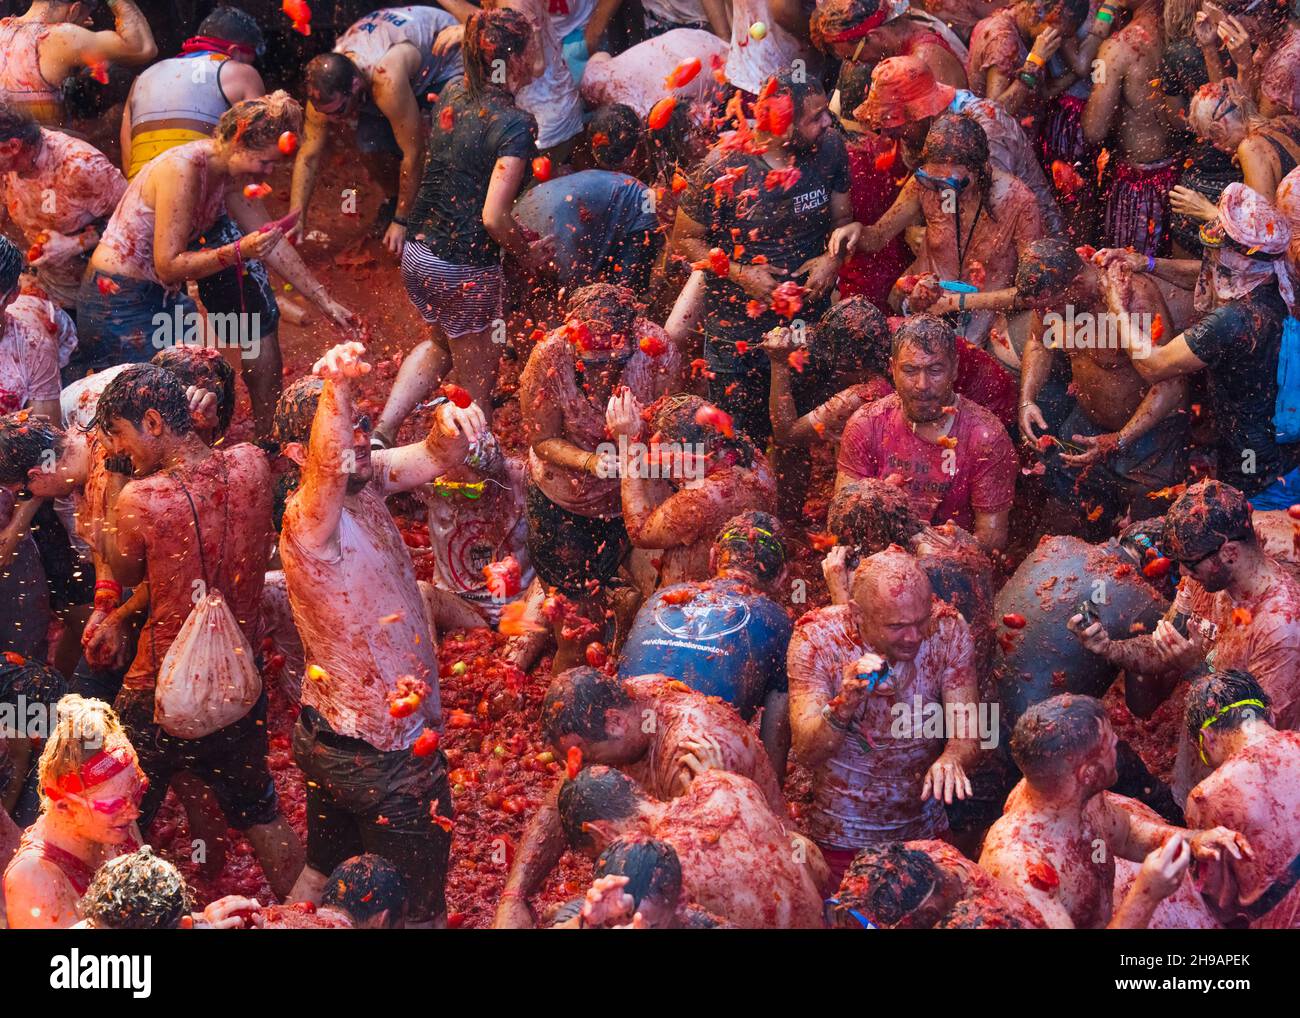 Des gens qui jettent des tomates à la Tomatina (festival de la tomate), Bunol, province de Valence, Espagne Banque D'Images